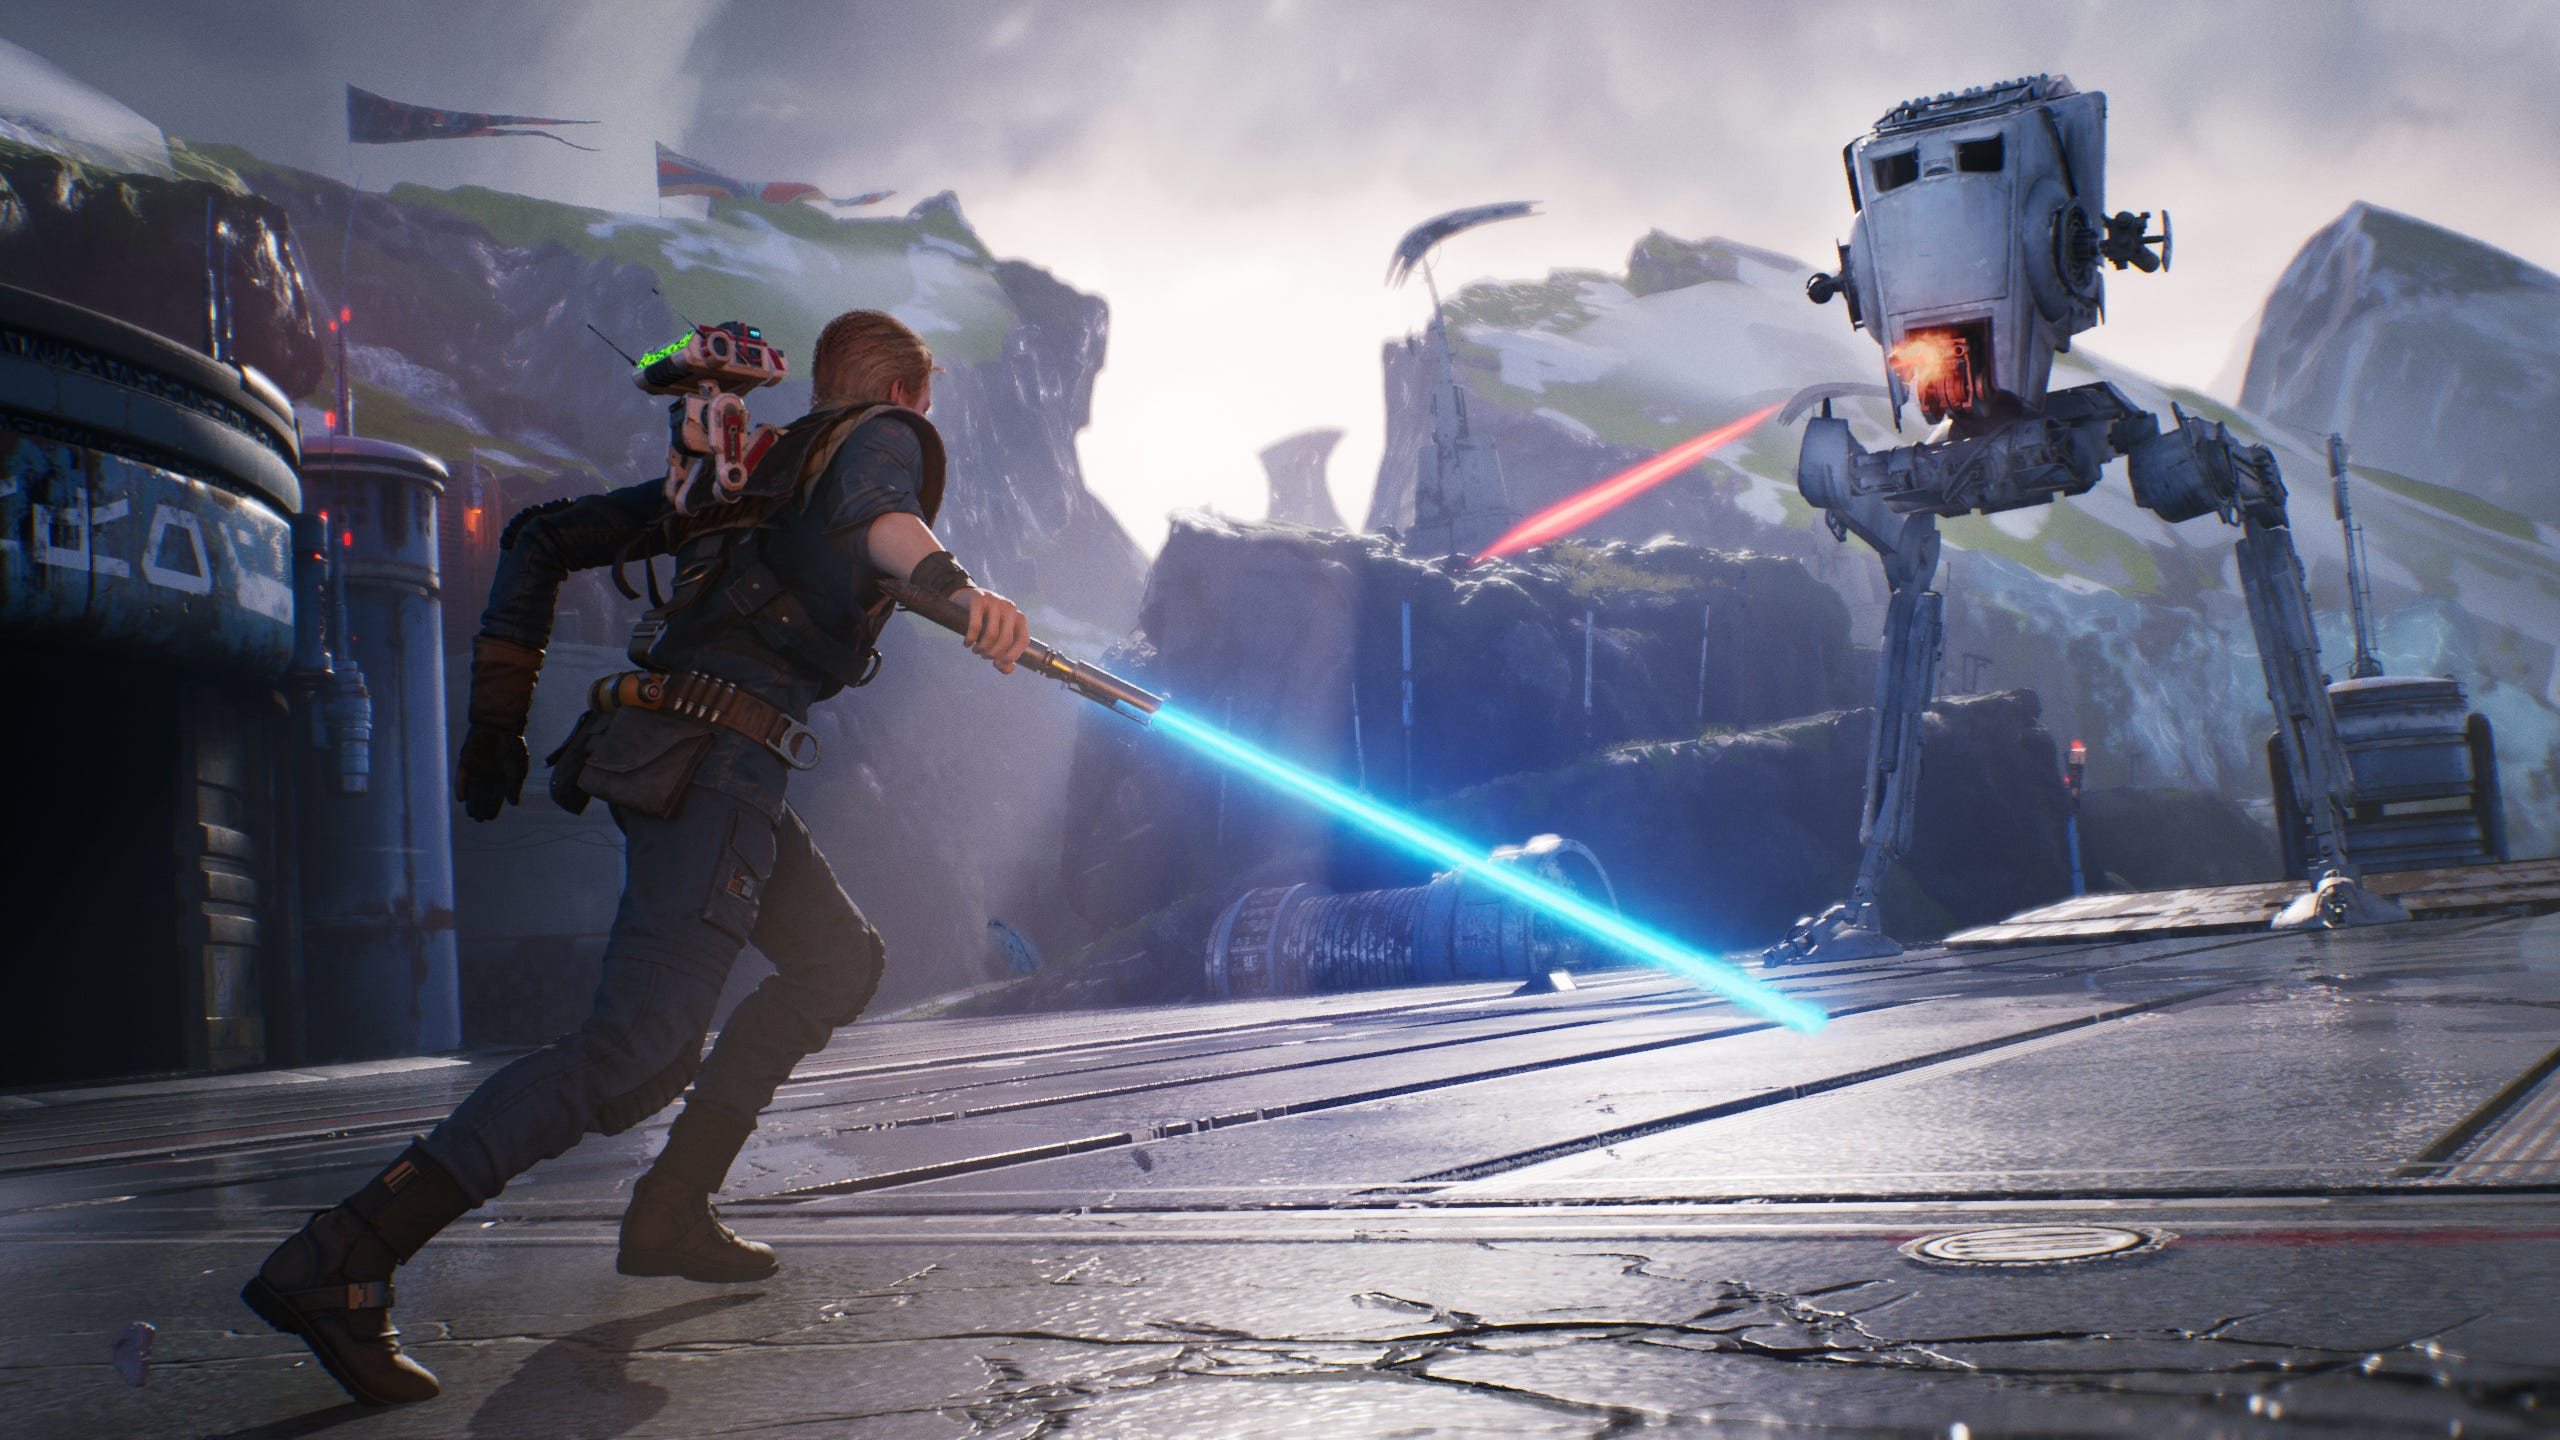 E3 2019: 'Star Wars: Jedi Fallen Order' lets you become a Jedi Knight